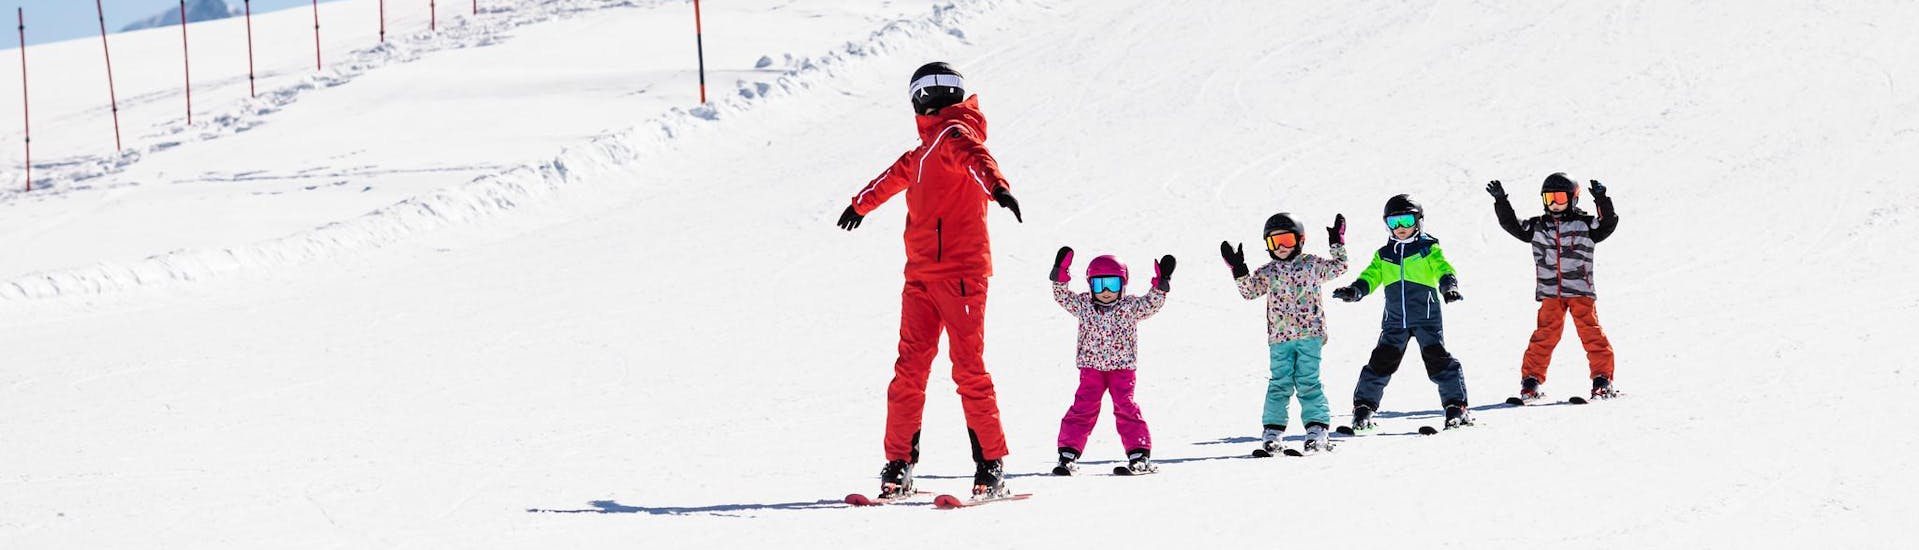 Maestro di sci e bambini che sciano sulle piste durante una lezione di sci.